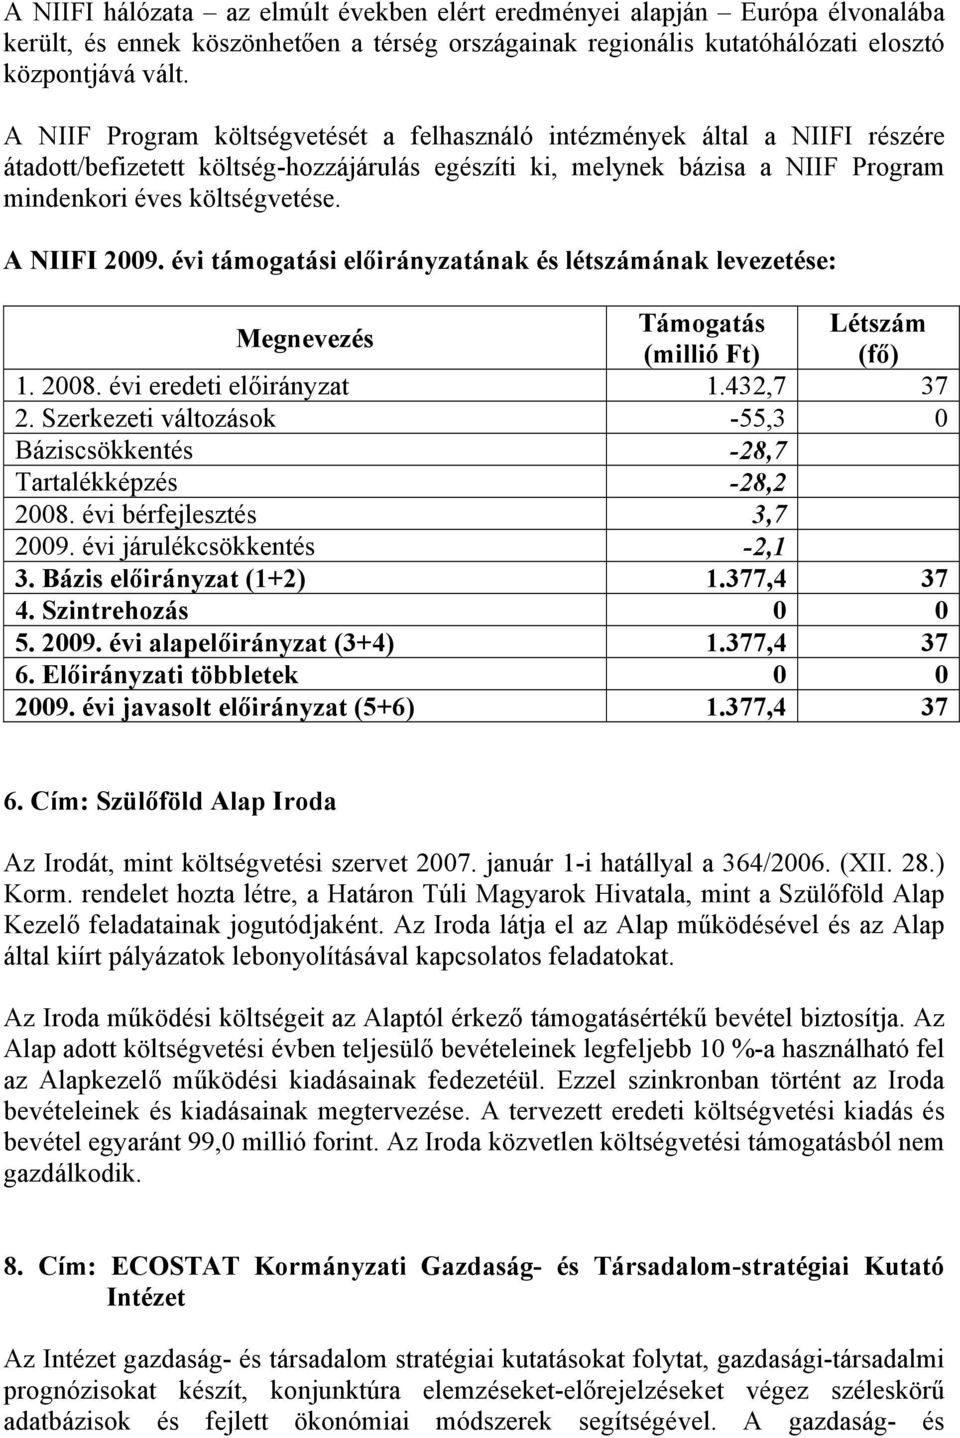 A NIIFI 2009. évi támogatási előirányzatának és létszámának levezetése: Megnevezés Támogatás Létszám (millió Ft) (fő) 1. 2008. évi eredeti előirányzat 1.432,7 37 2.